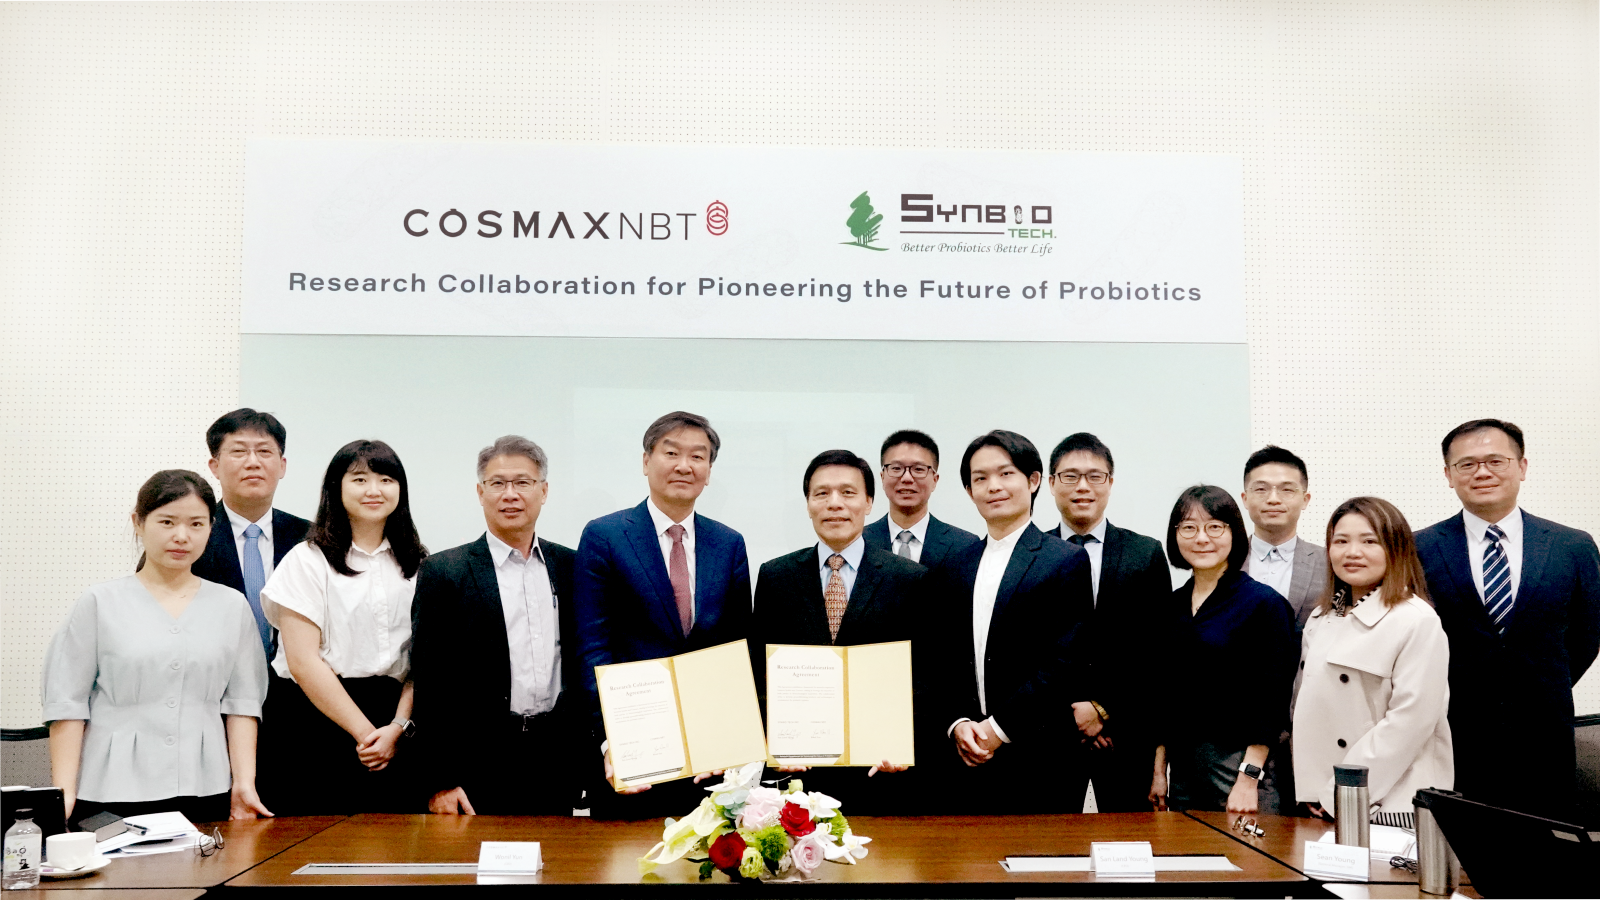 生合生物科技攜手韓國保健食品大廠科絲美詩簽屬研究合作協議